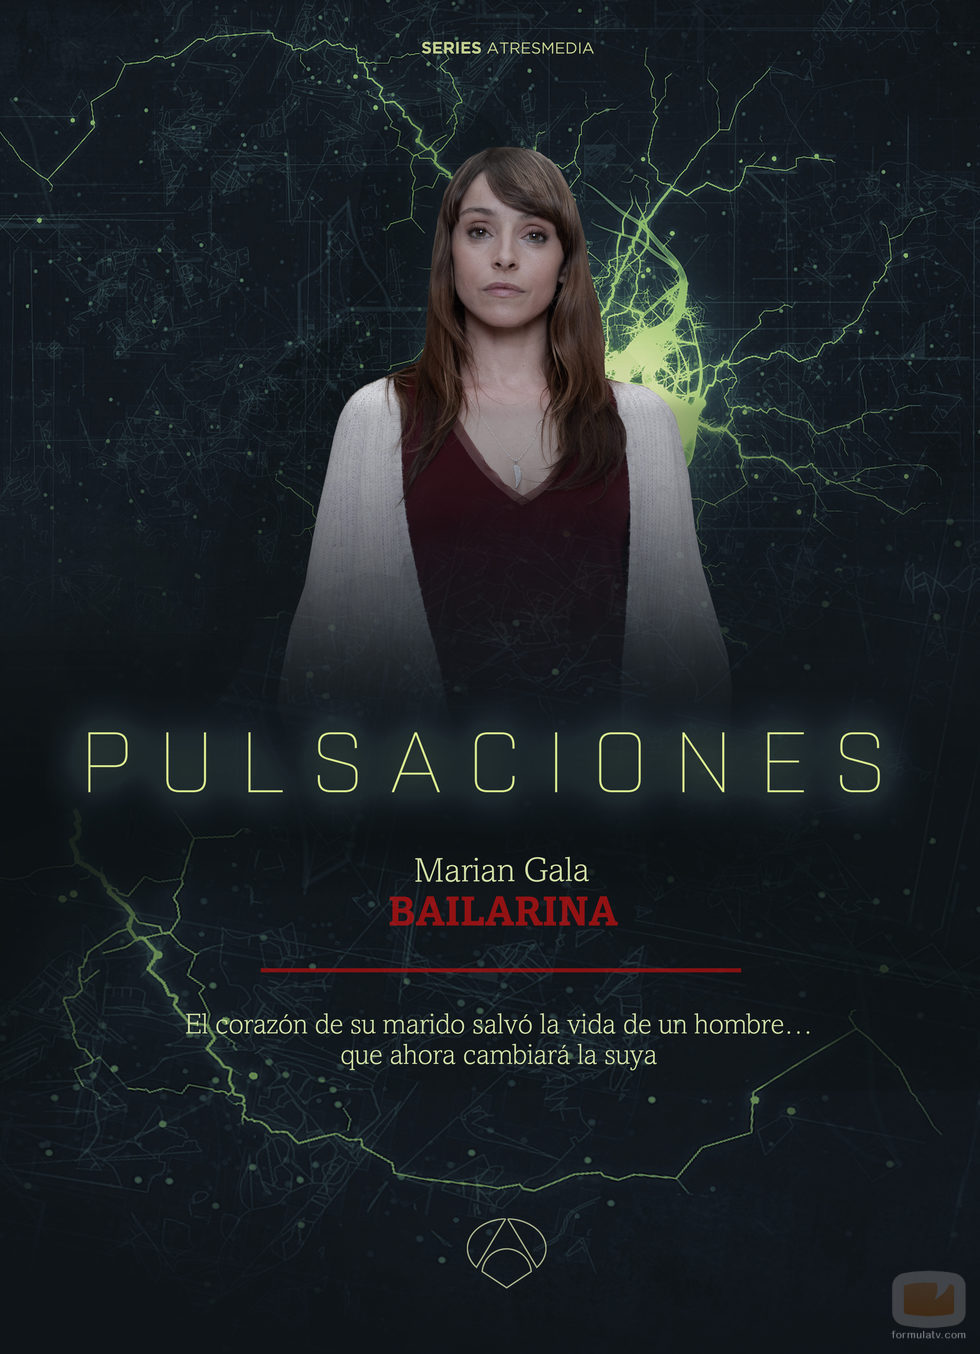 Indrig Rubio interpreta a Marian Gala en la serie 'Pulsaciones'